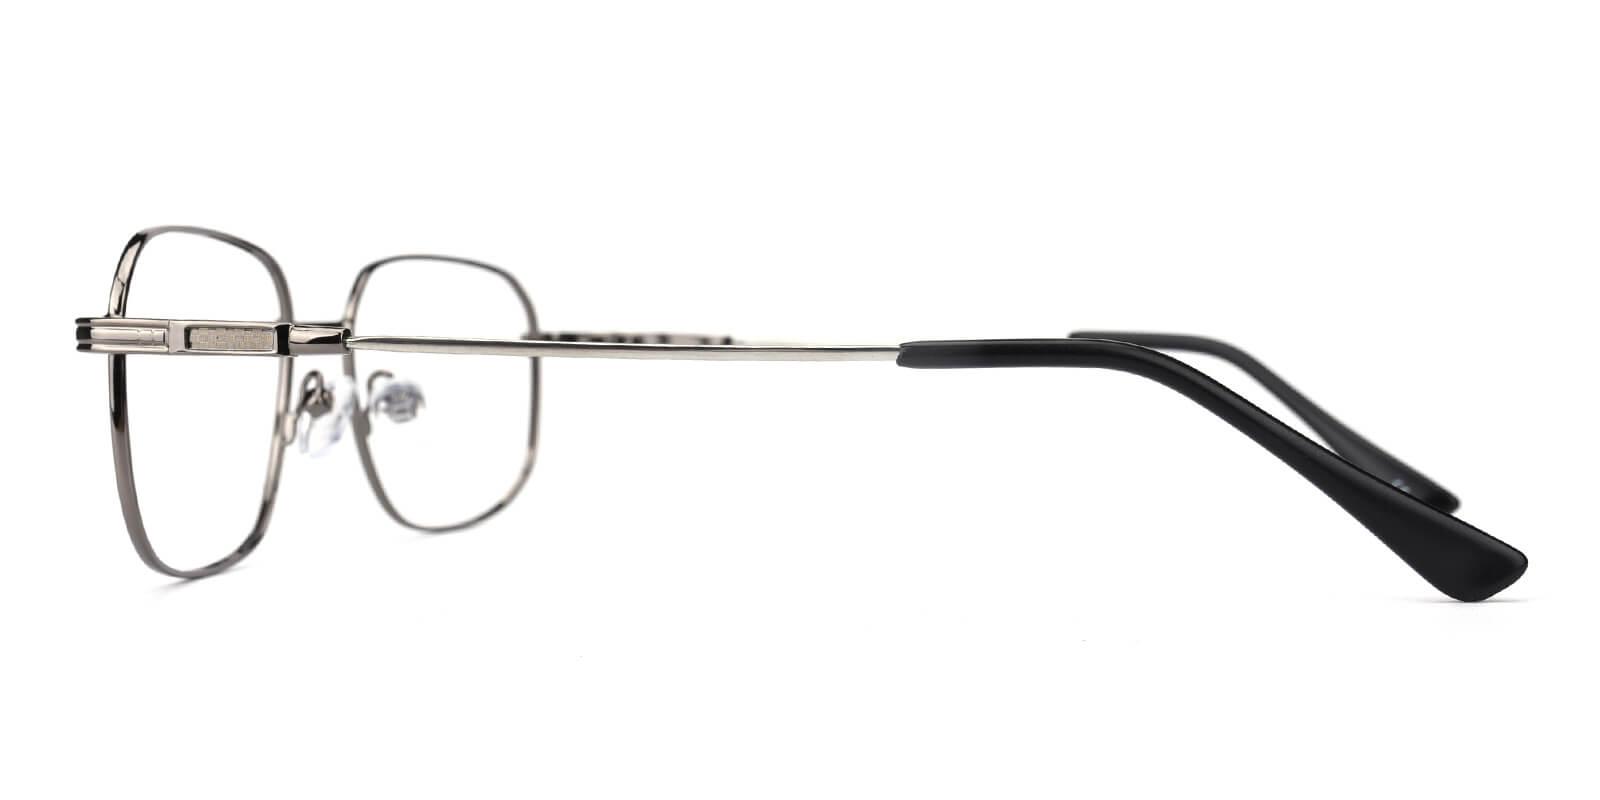 Weston-Gun-Square-Metal-Eyeglasses-detail